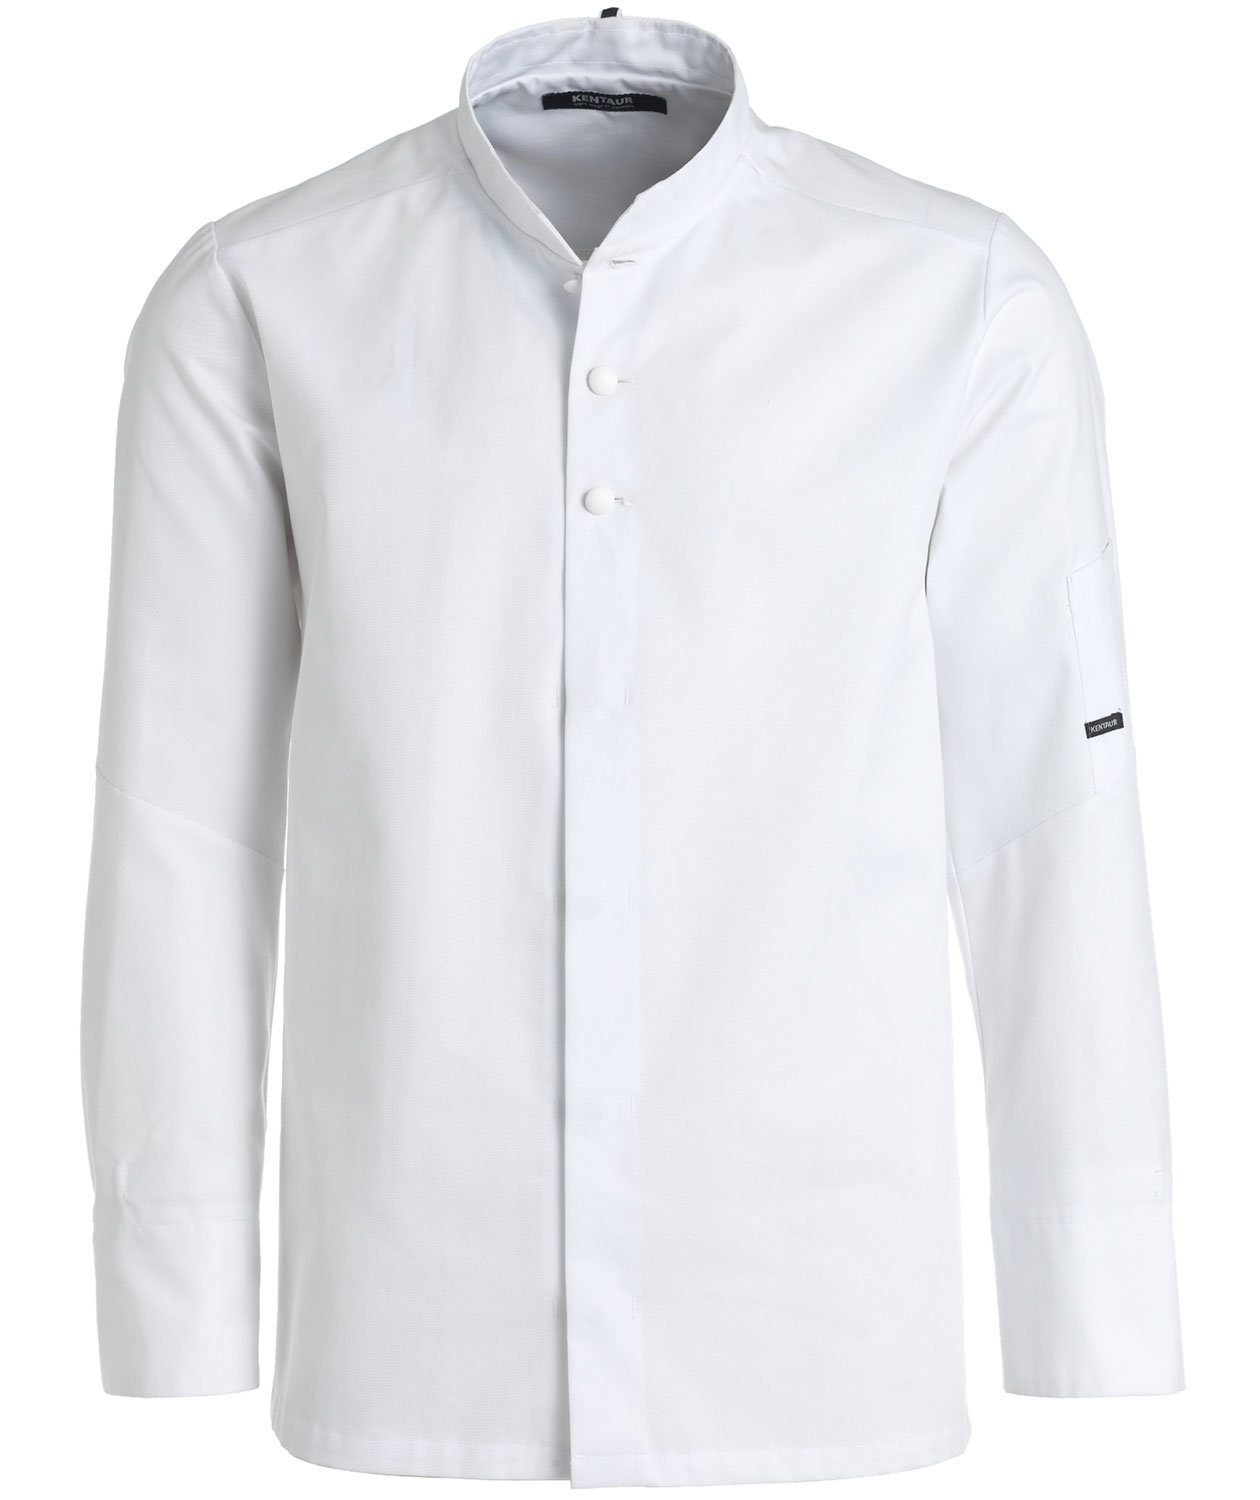 Küchenchef Kurzärmlige Jacke Hemd Weiß Oder Schwarz XS-4XL 